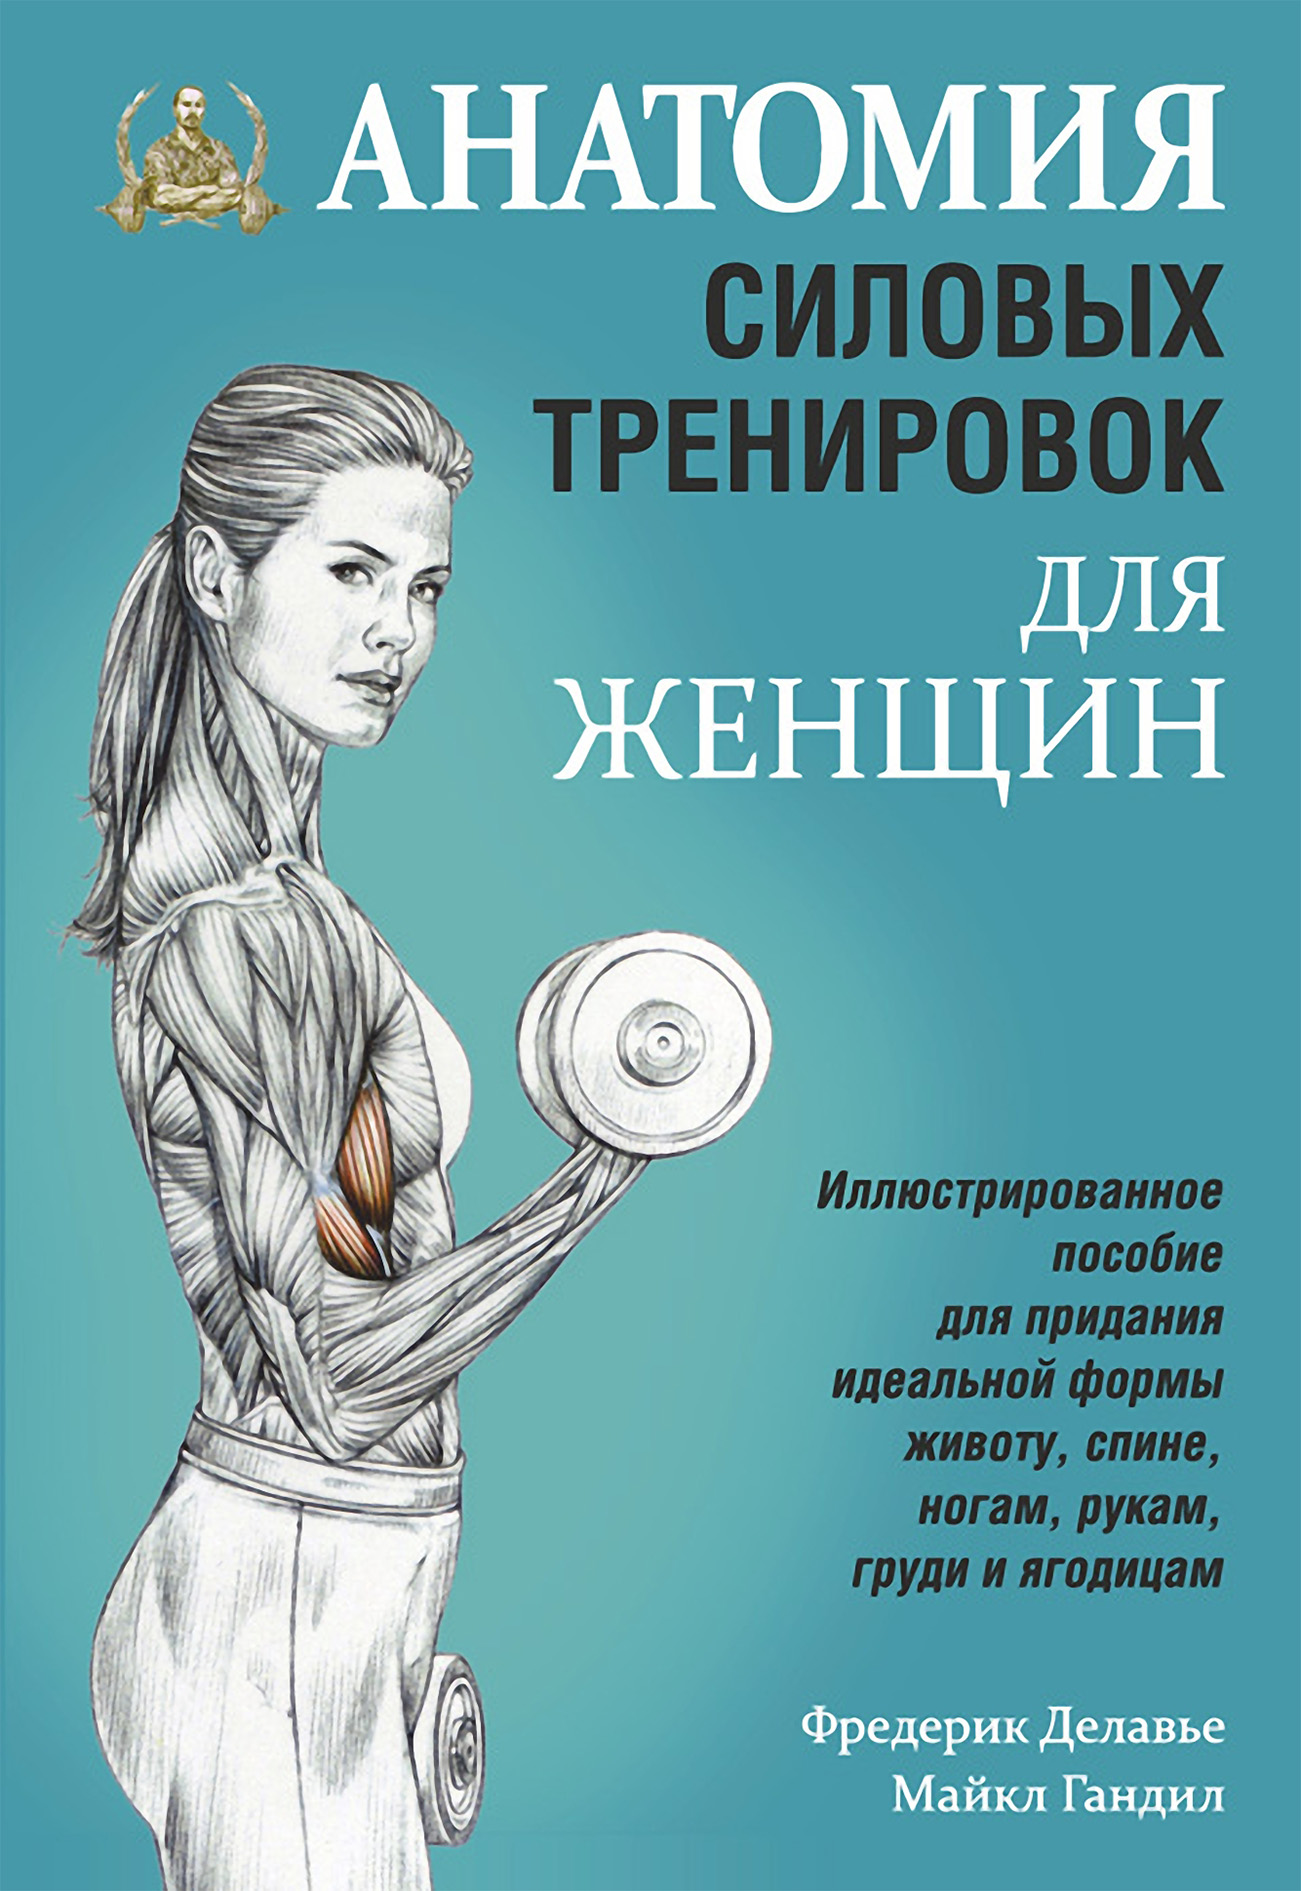 Фредерик Делавье Анатомия силовых тренировок для женщин